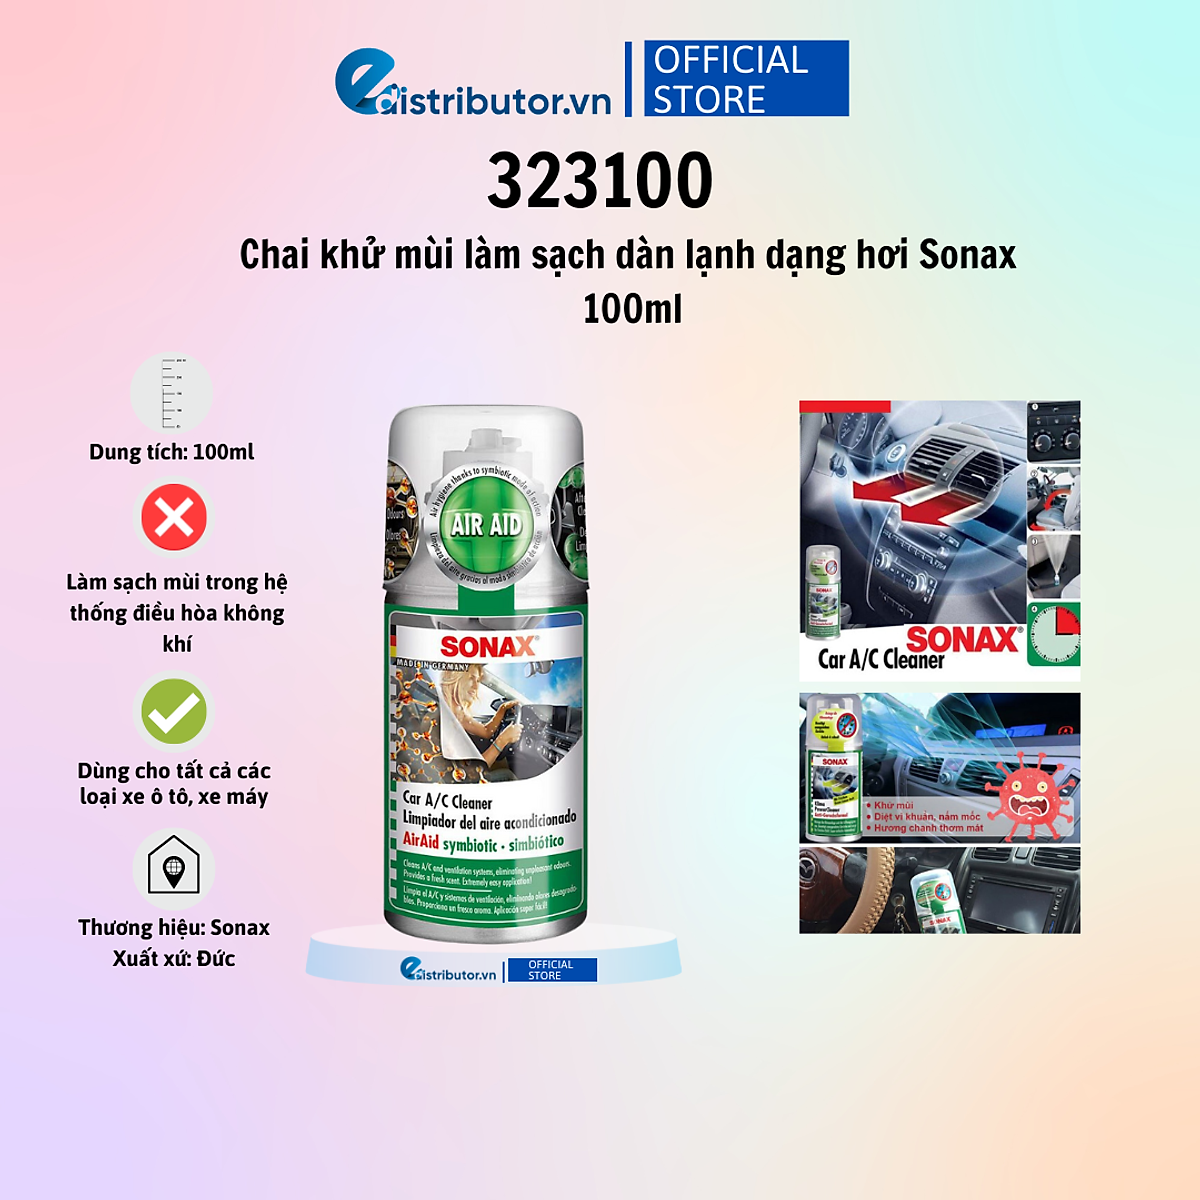 Mua Chai khử mùi làm sạch dàn lạnh dạng hơi Sonax Car A/C Cleaner 100ml  323100 tại Edistributor